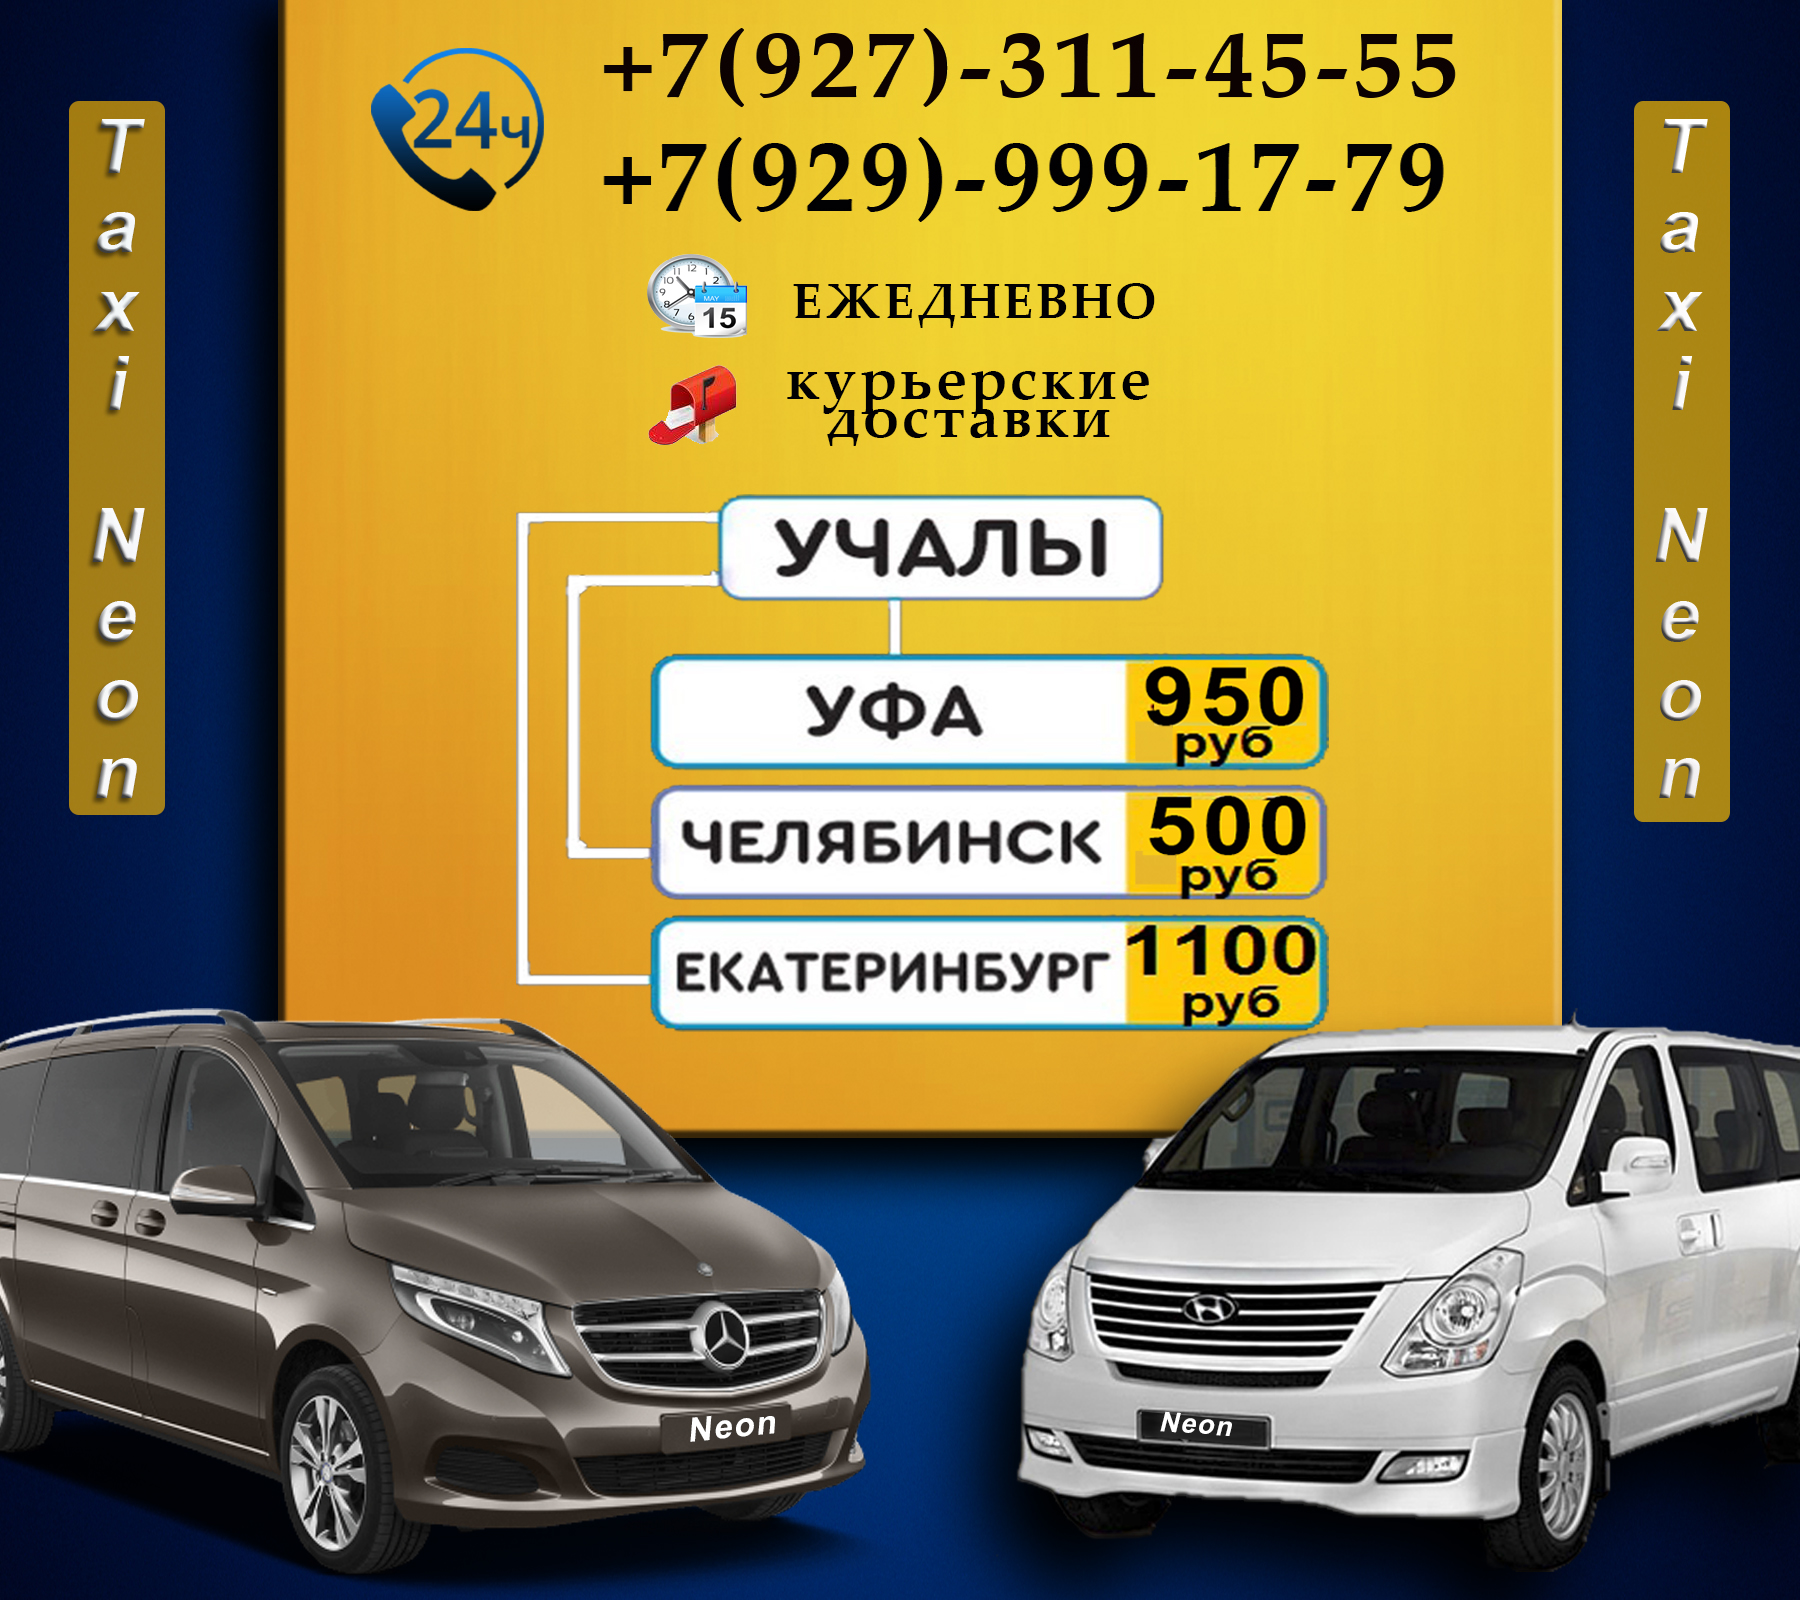 Дешевое такси в оренбурге